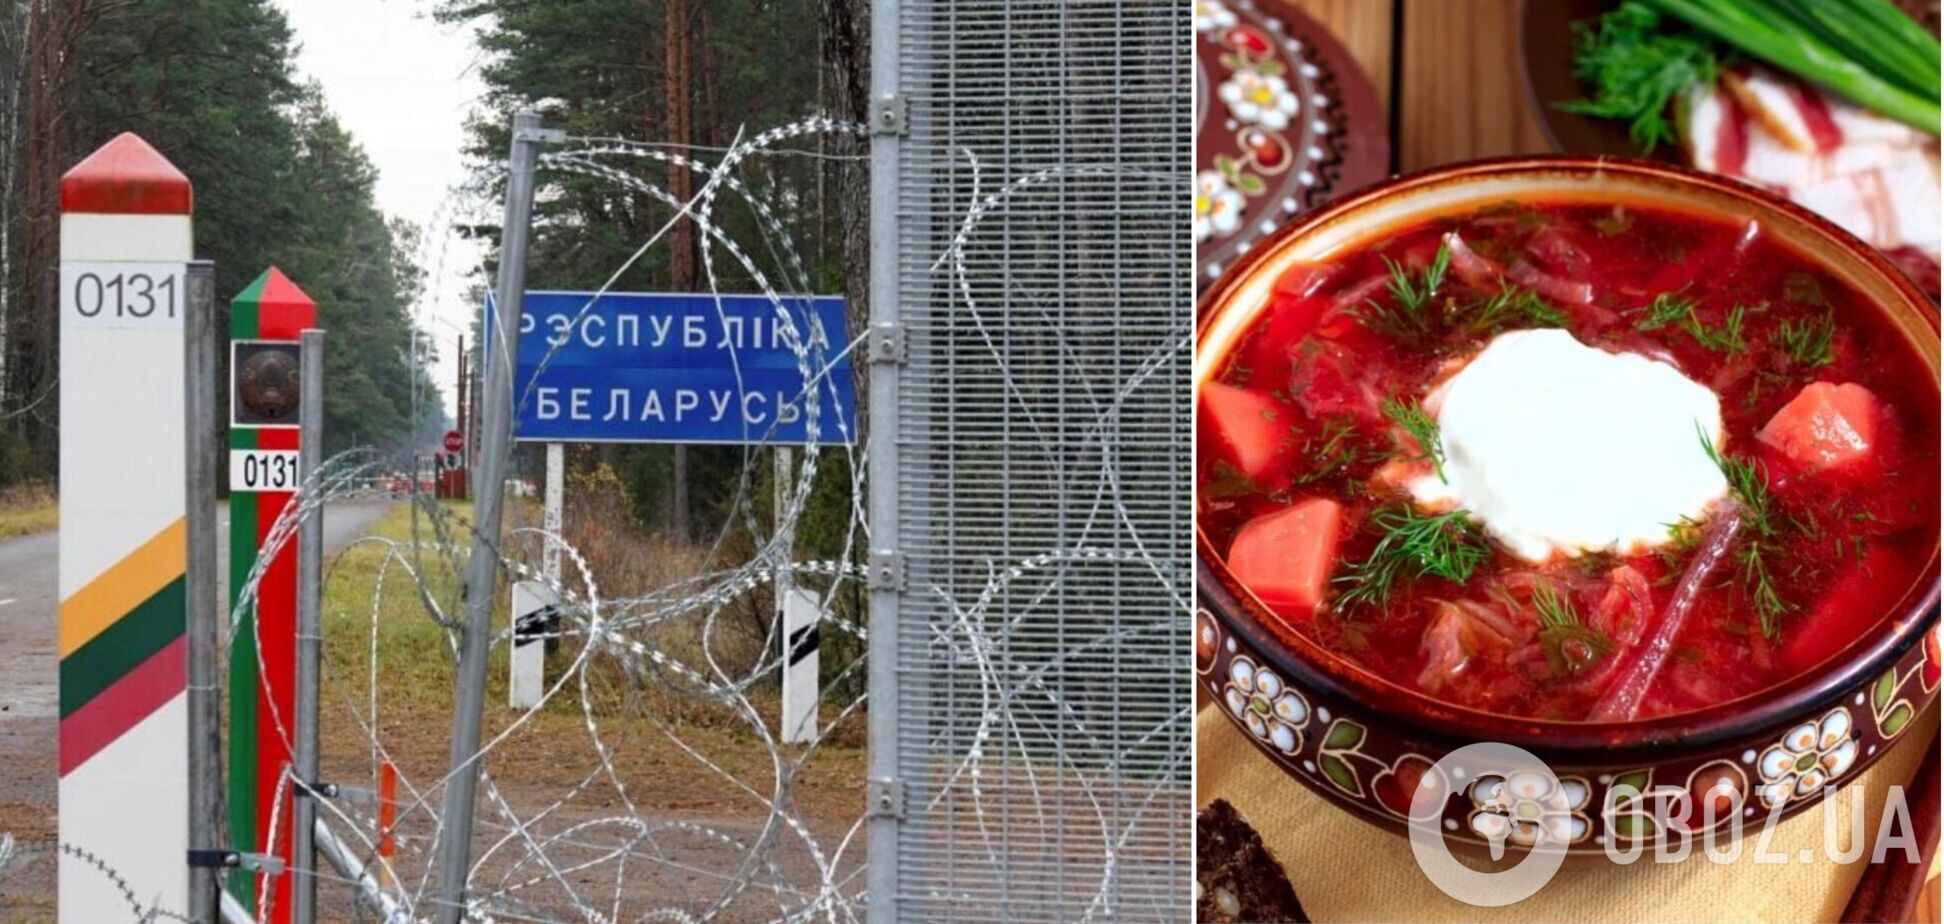 'Переходите на нашу сторону': беларусы устроили циничную акцию на границе с Украиной с рассказом о 'братском борще'. Видео